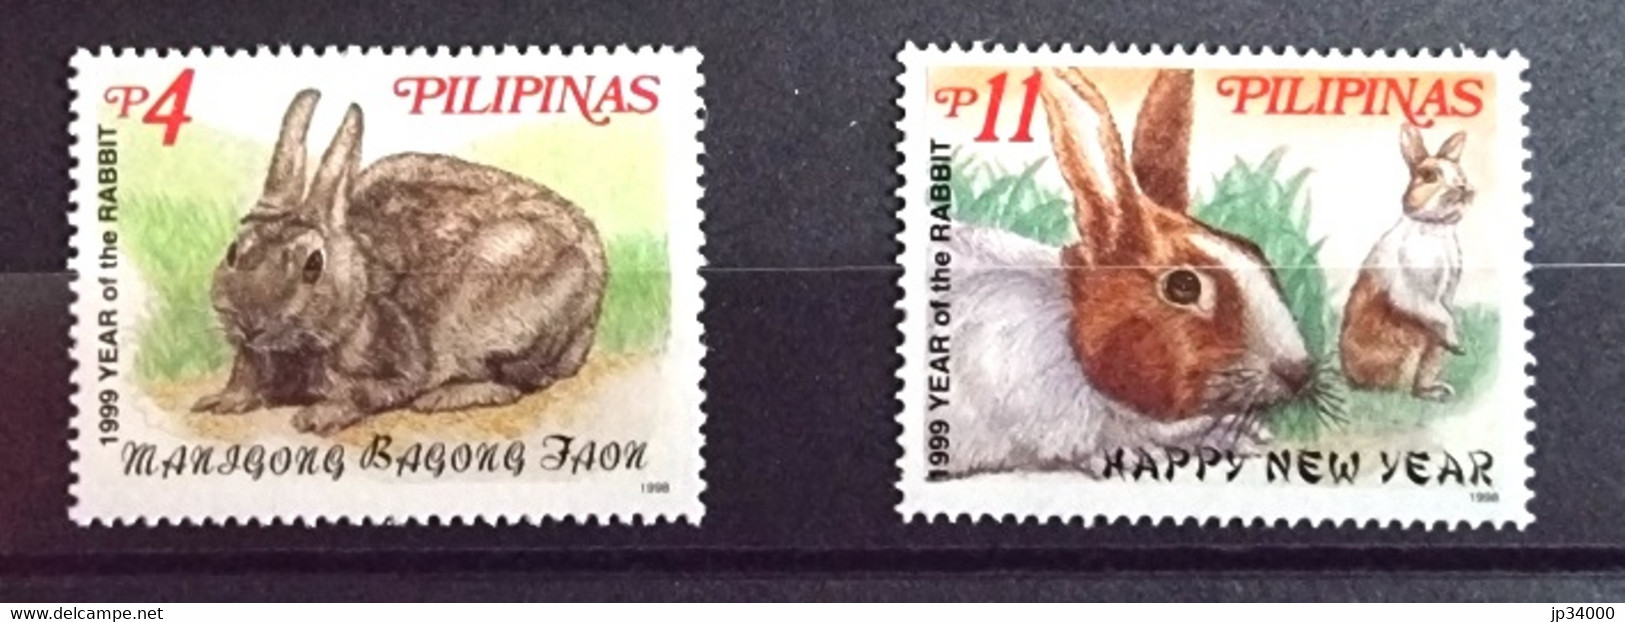 PHILIPPINES-PILIPINAS Lapins, Lapin, Rabbit, Conejo. Année Du Lapin 1999 2 Valeurs Dentelé. ** Neuf Sans Charnière - Rabbits